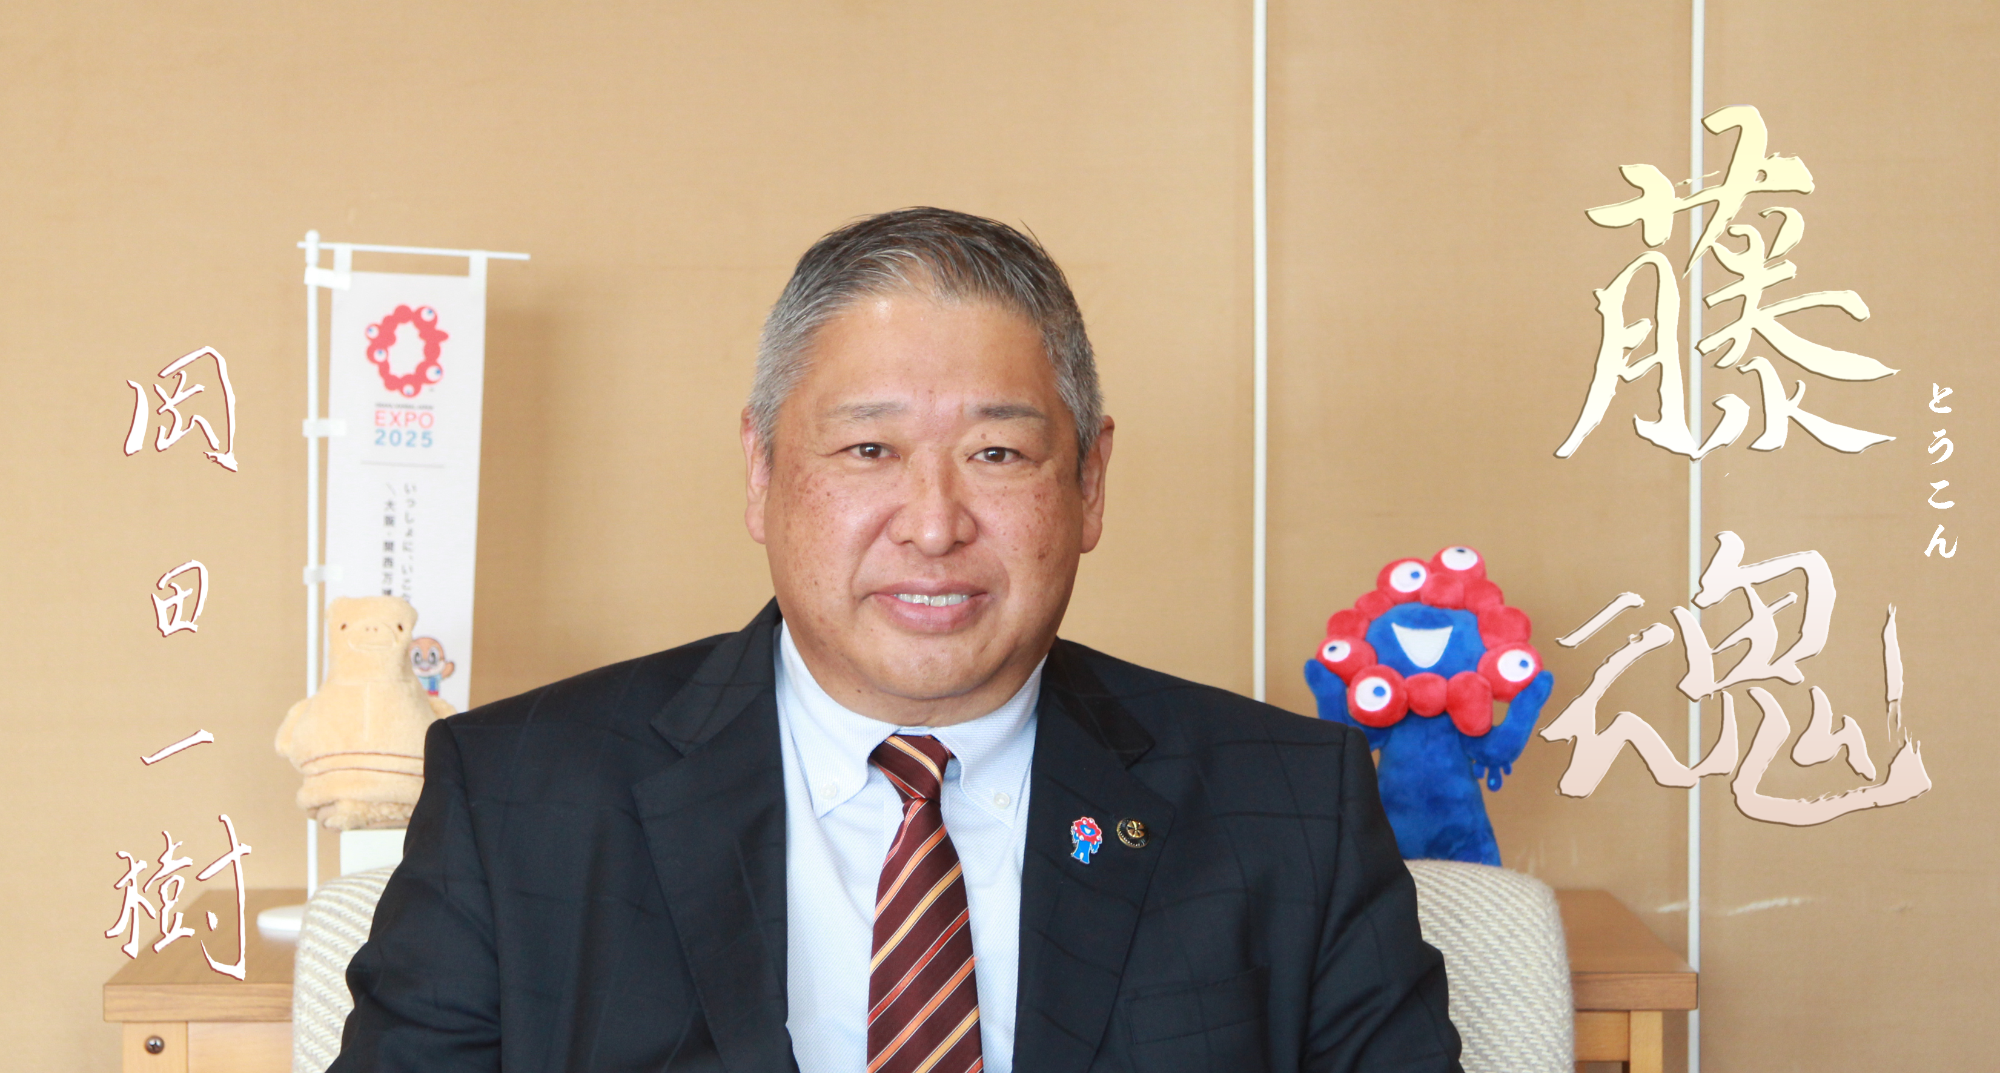 みずどりはにわとミャクミャクのぬいぐるみの間に座っている岡田市長の写真